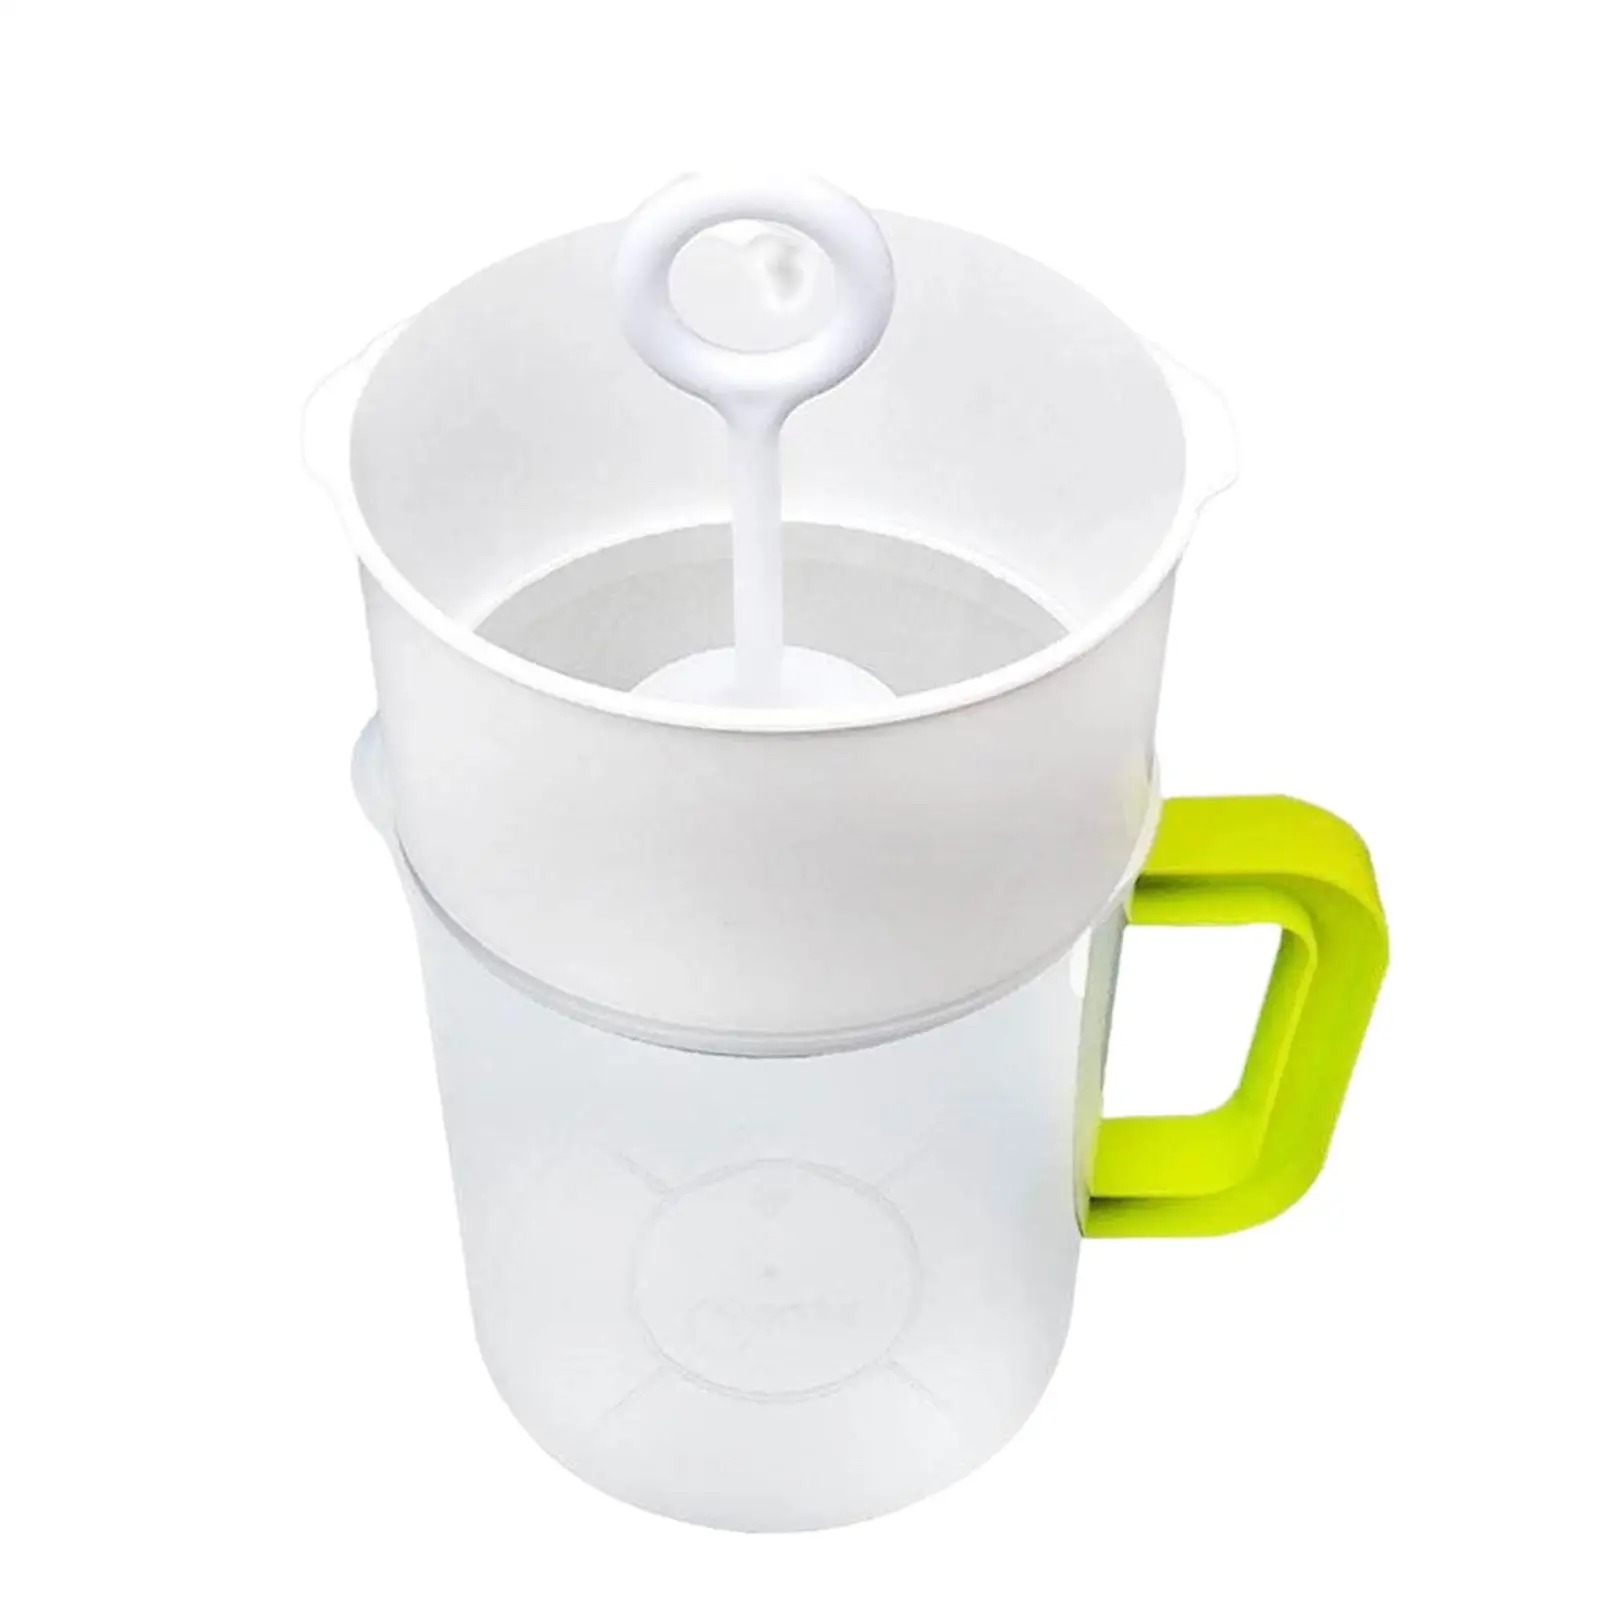 1.5 Quart Food Strainer Yogurt Strainer Maker with Pitcher Handle Press Stick Brush Soy Milk Juice Filter for Home Yogurt